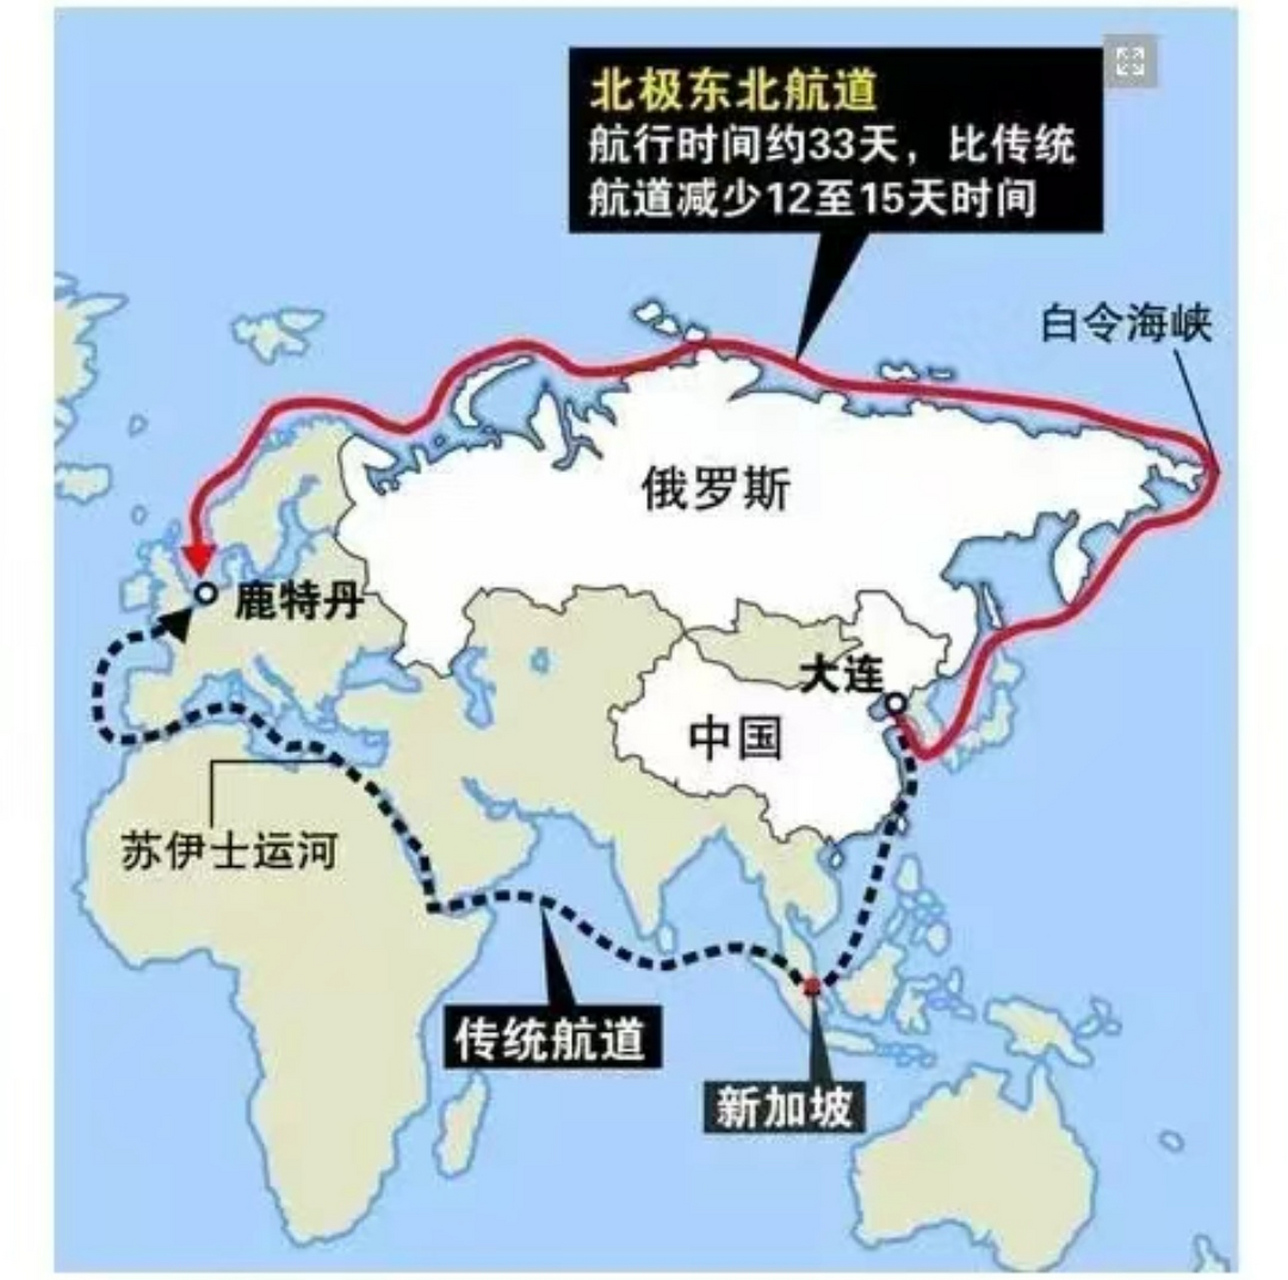 俄罗斯极力打造的北极航线  这条航线实际上未必适合商船,沿途基本都